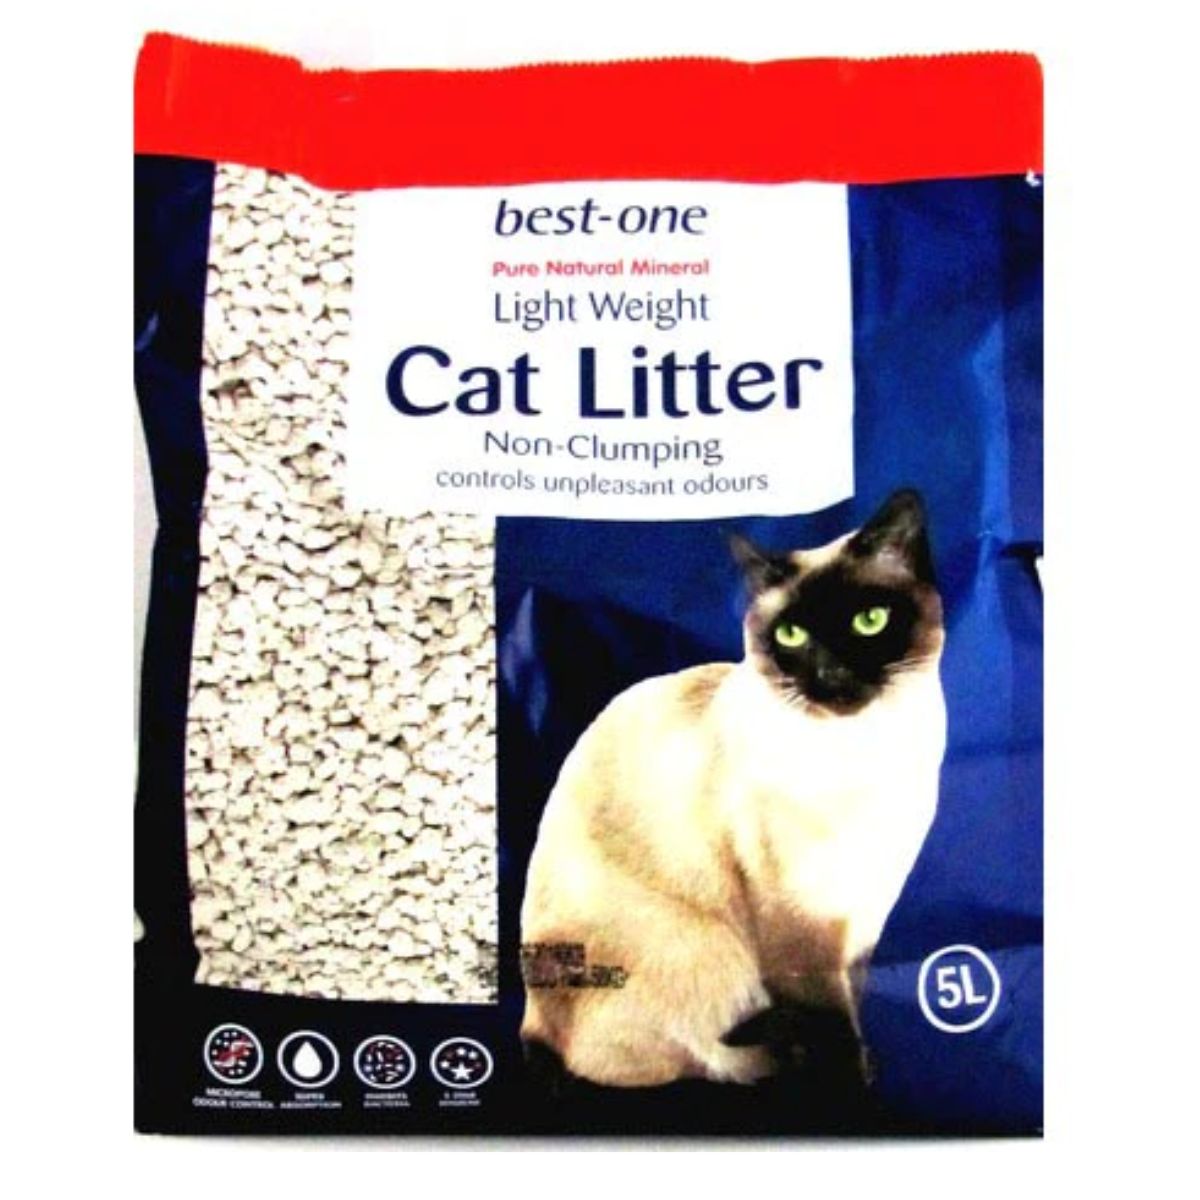 Best One - Cat Litter - 5L is a light weight cat litter.